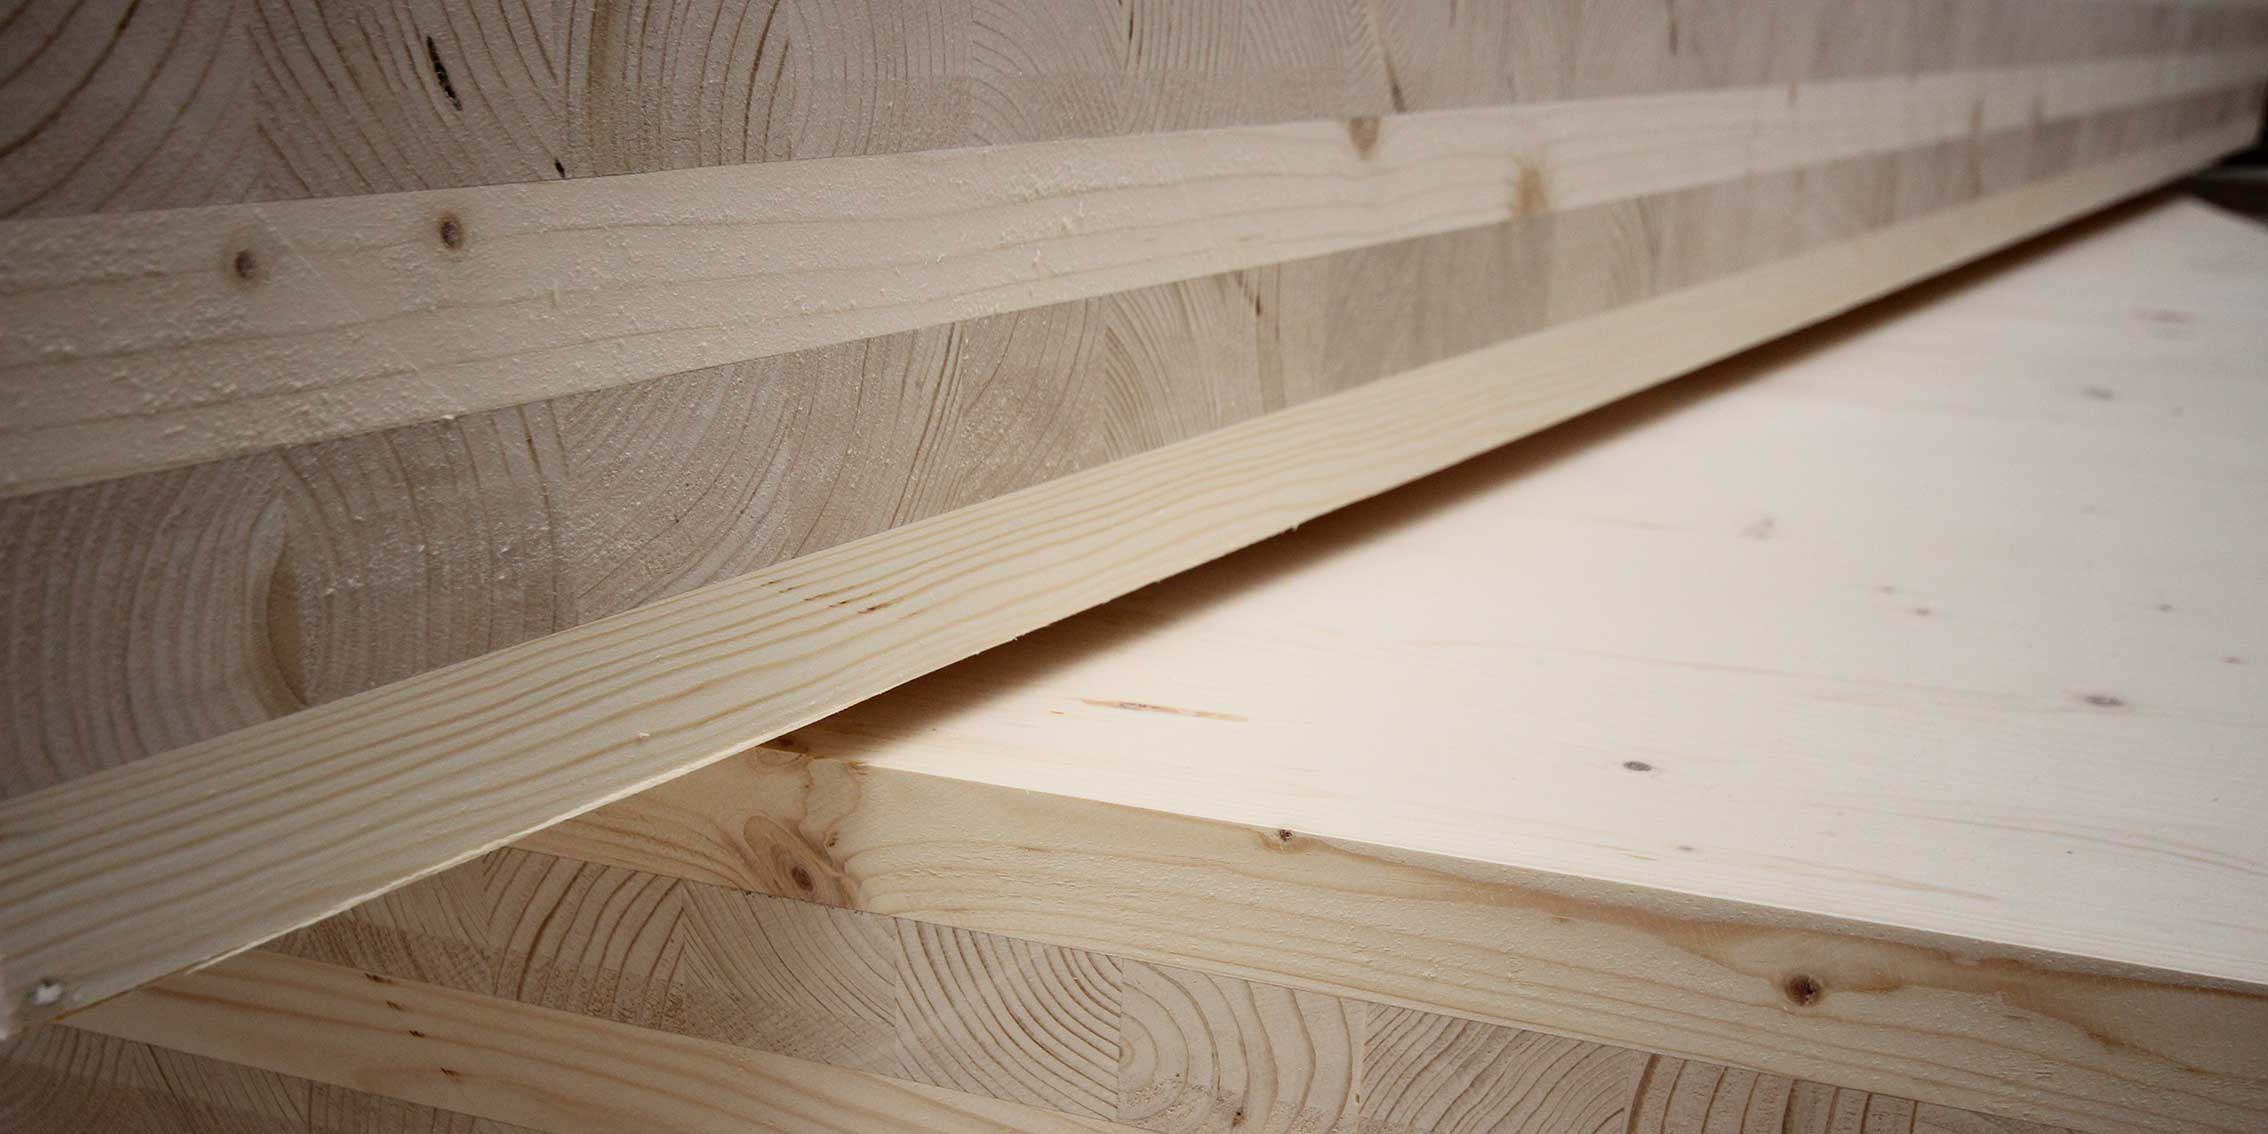 Panneaux bois CLT, composés de plusieurs couches croisées de planches en bois massif séché